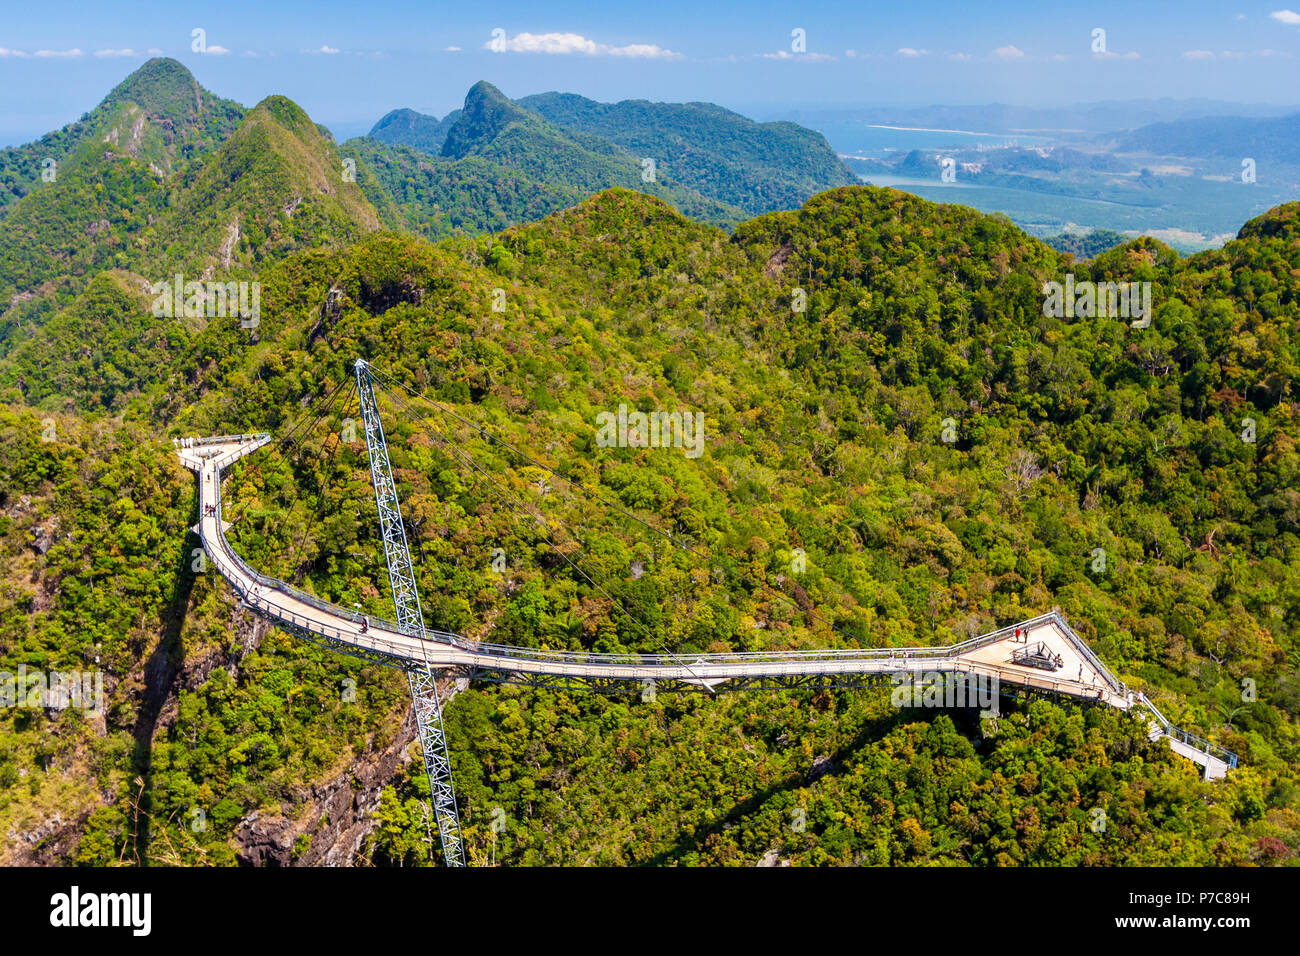 La perspectiva aérea de Langkawi, un puente peatonal curvado puente suspendido con plataformas de observación triangular, conectando dos cimas en... Foto de stock